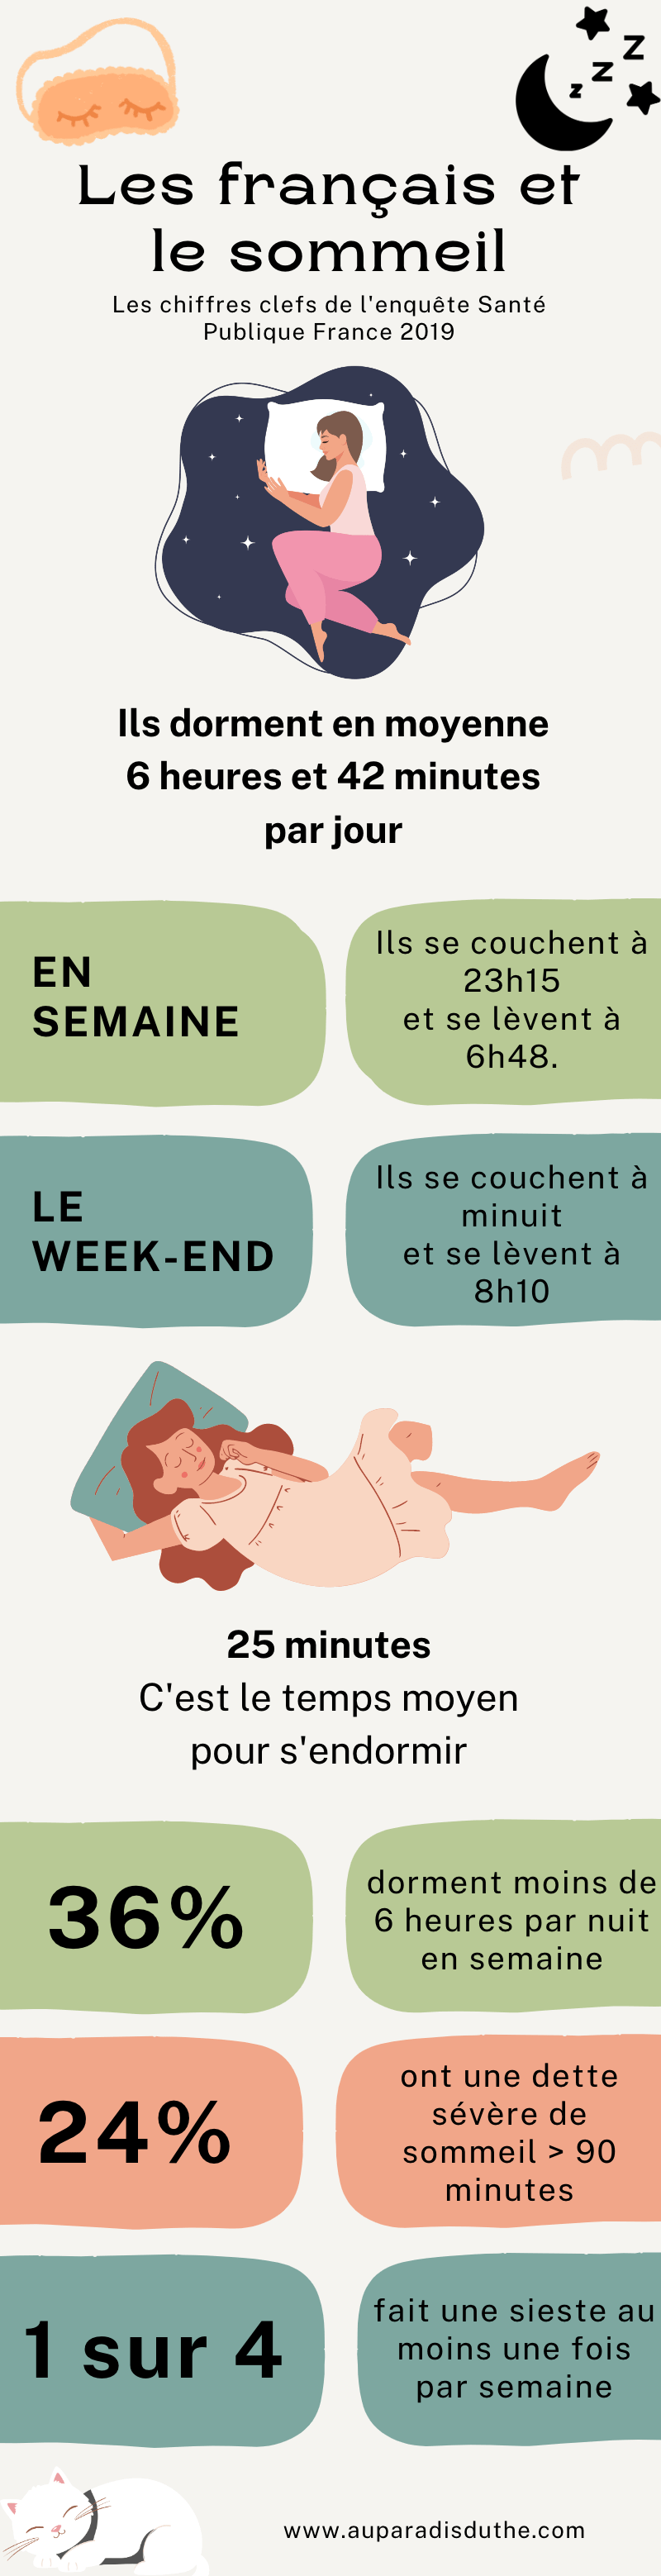 Infographie : les français et le sommeil